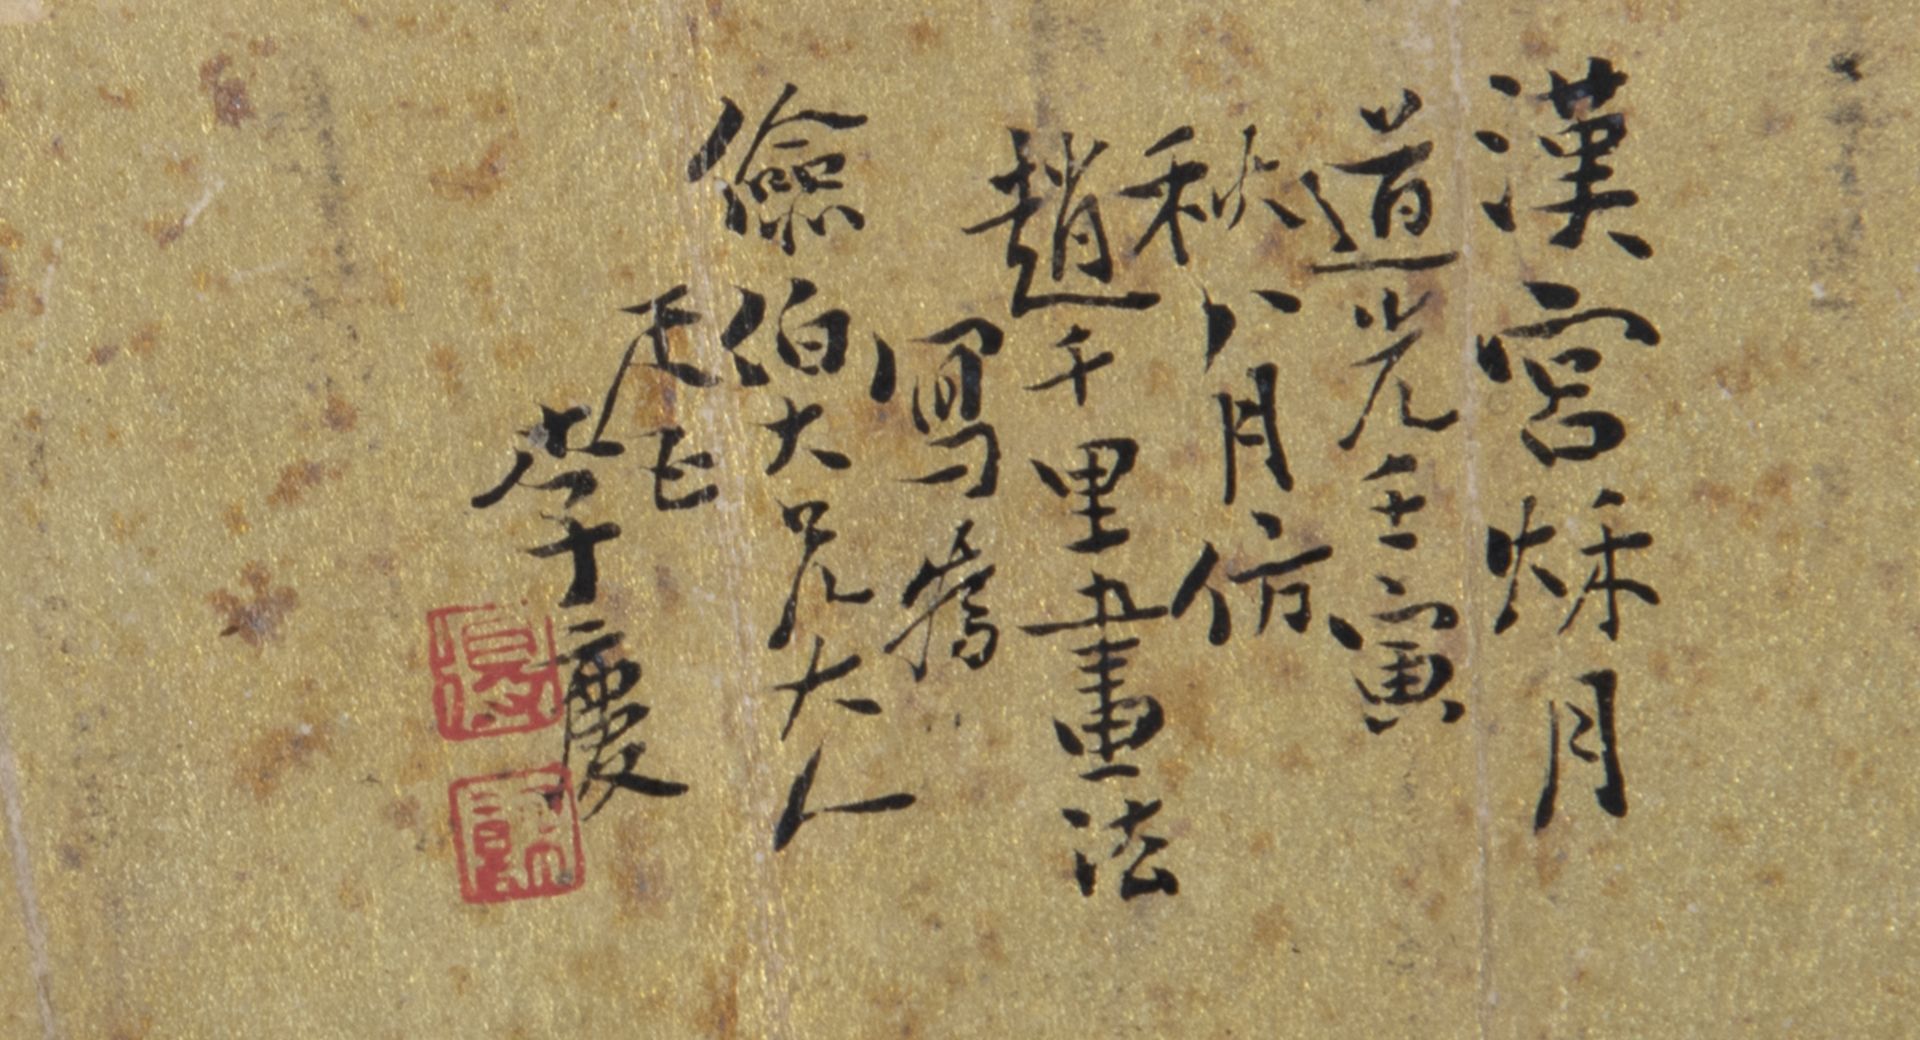 LI QING (DIED 1853) - Image 2 of 3